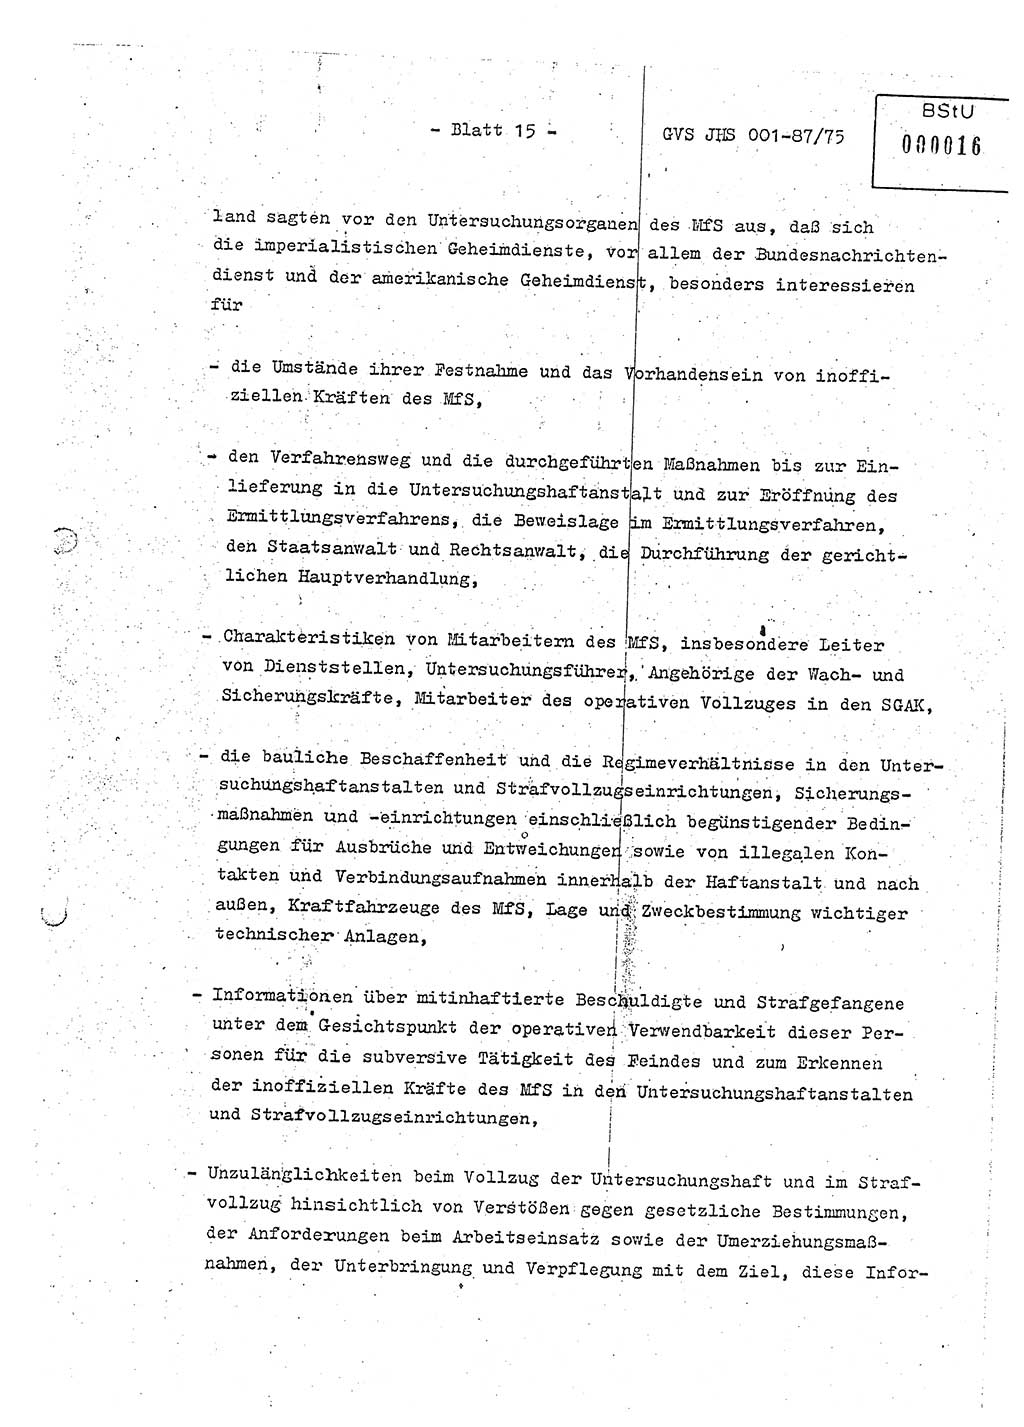 Diplomarbeit Hauptmann Volkmar Heinz (Abt. ⅩⅣ), Oberleutnant Lothar Rüdiger (BV Lpz. Abt. Ⅺ), Ministerium für Staatssicherheit (MfS) [Deutsche Demokratische Republik (DDR)], Juristische Hochschule (JHS), Geheime Verschlußsache (GVS) o001-87/75, Potsdam 1975, Seite 15 (Dipl.-Arb. MfS DDR JHS GVS o001-87/75 1975, S. 15)